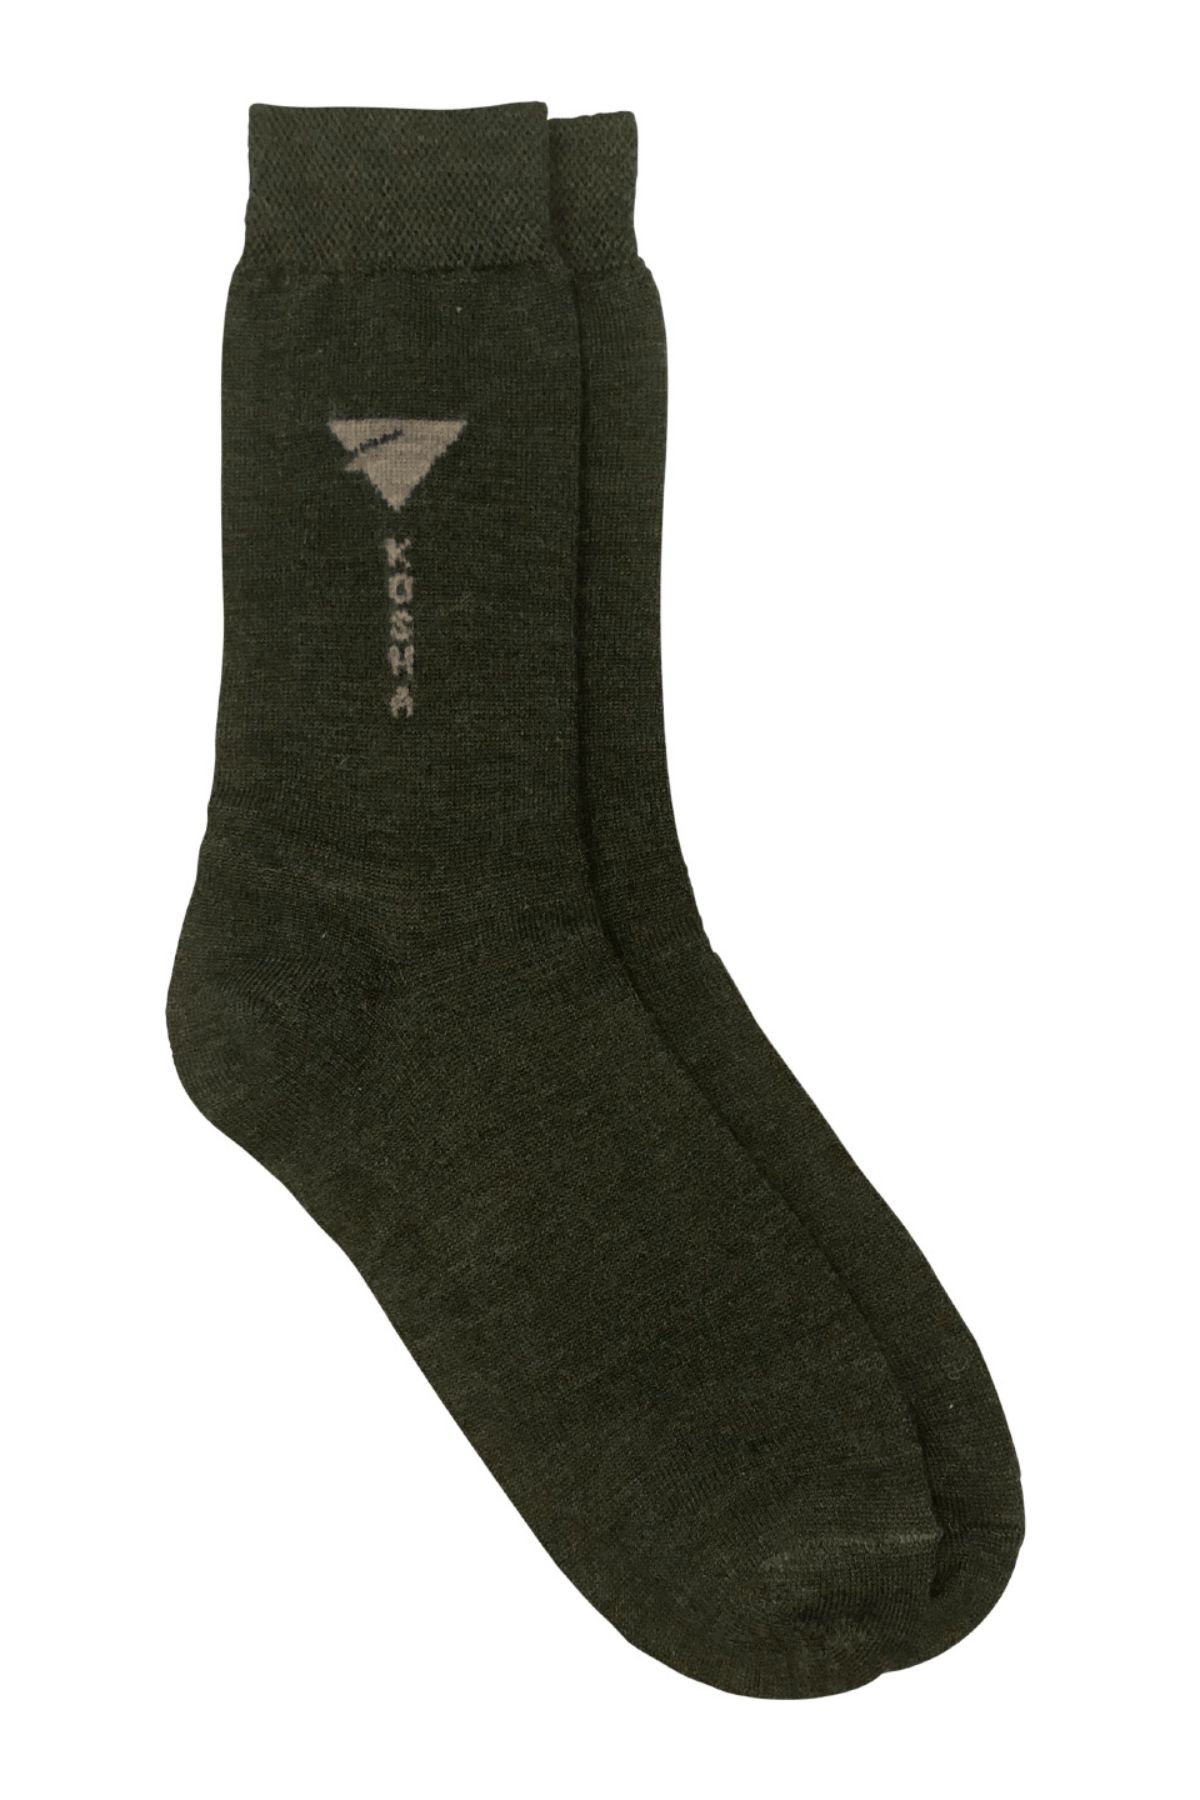 Olive Merino Wool Regular Length Winter Liner Socks | Men